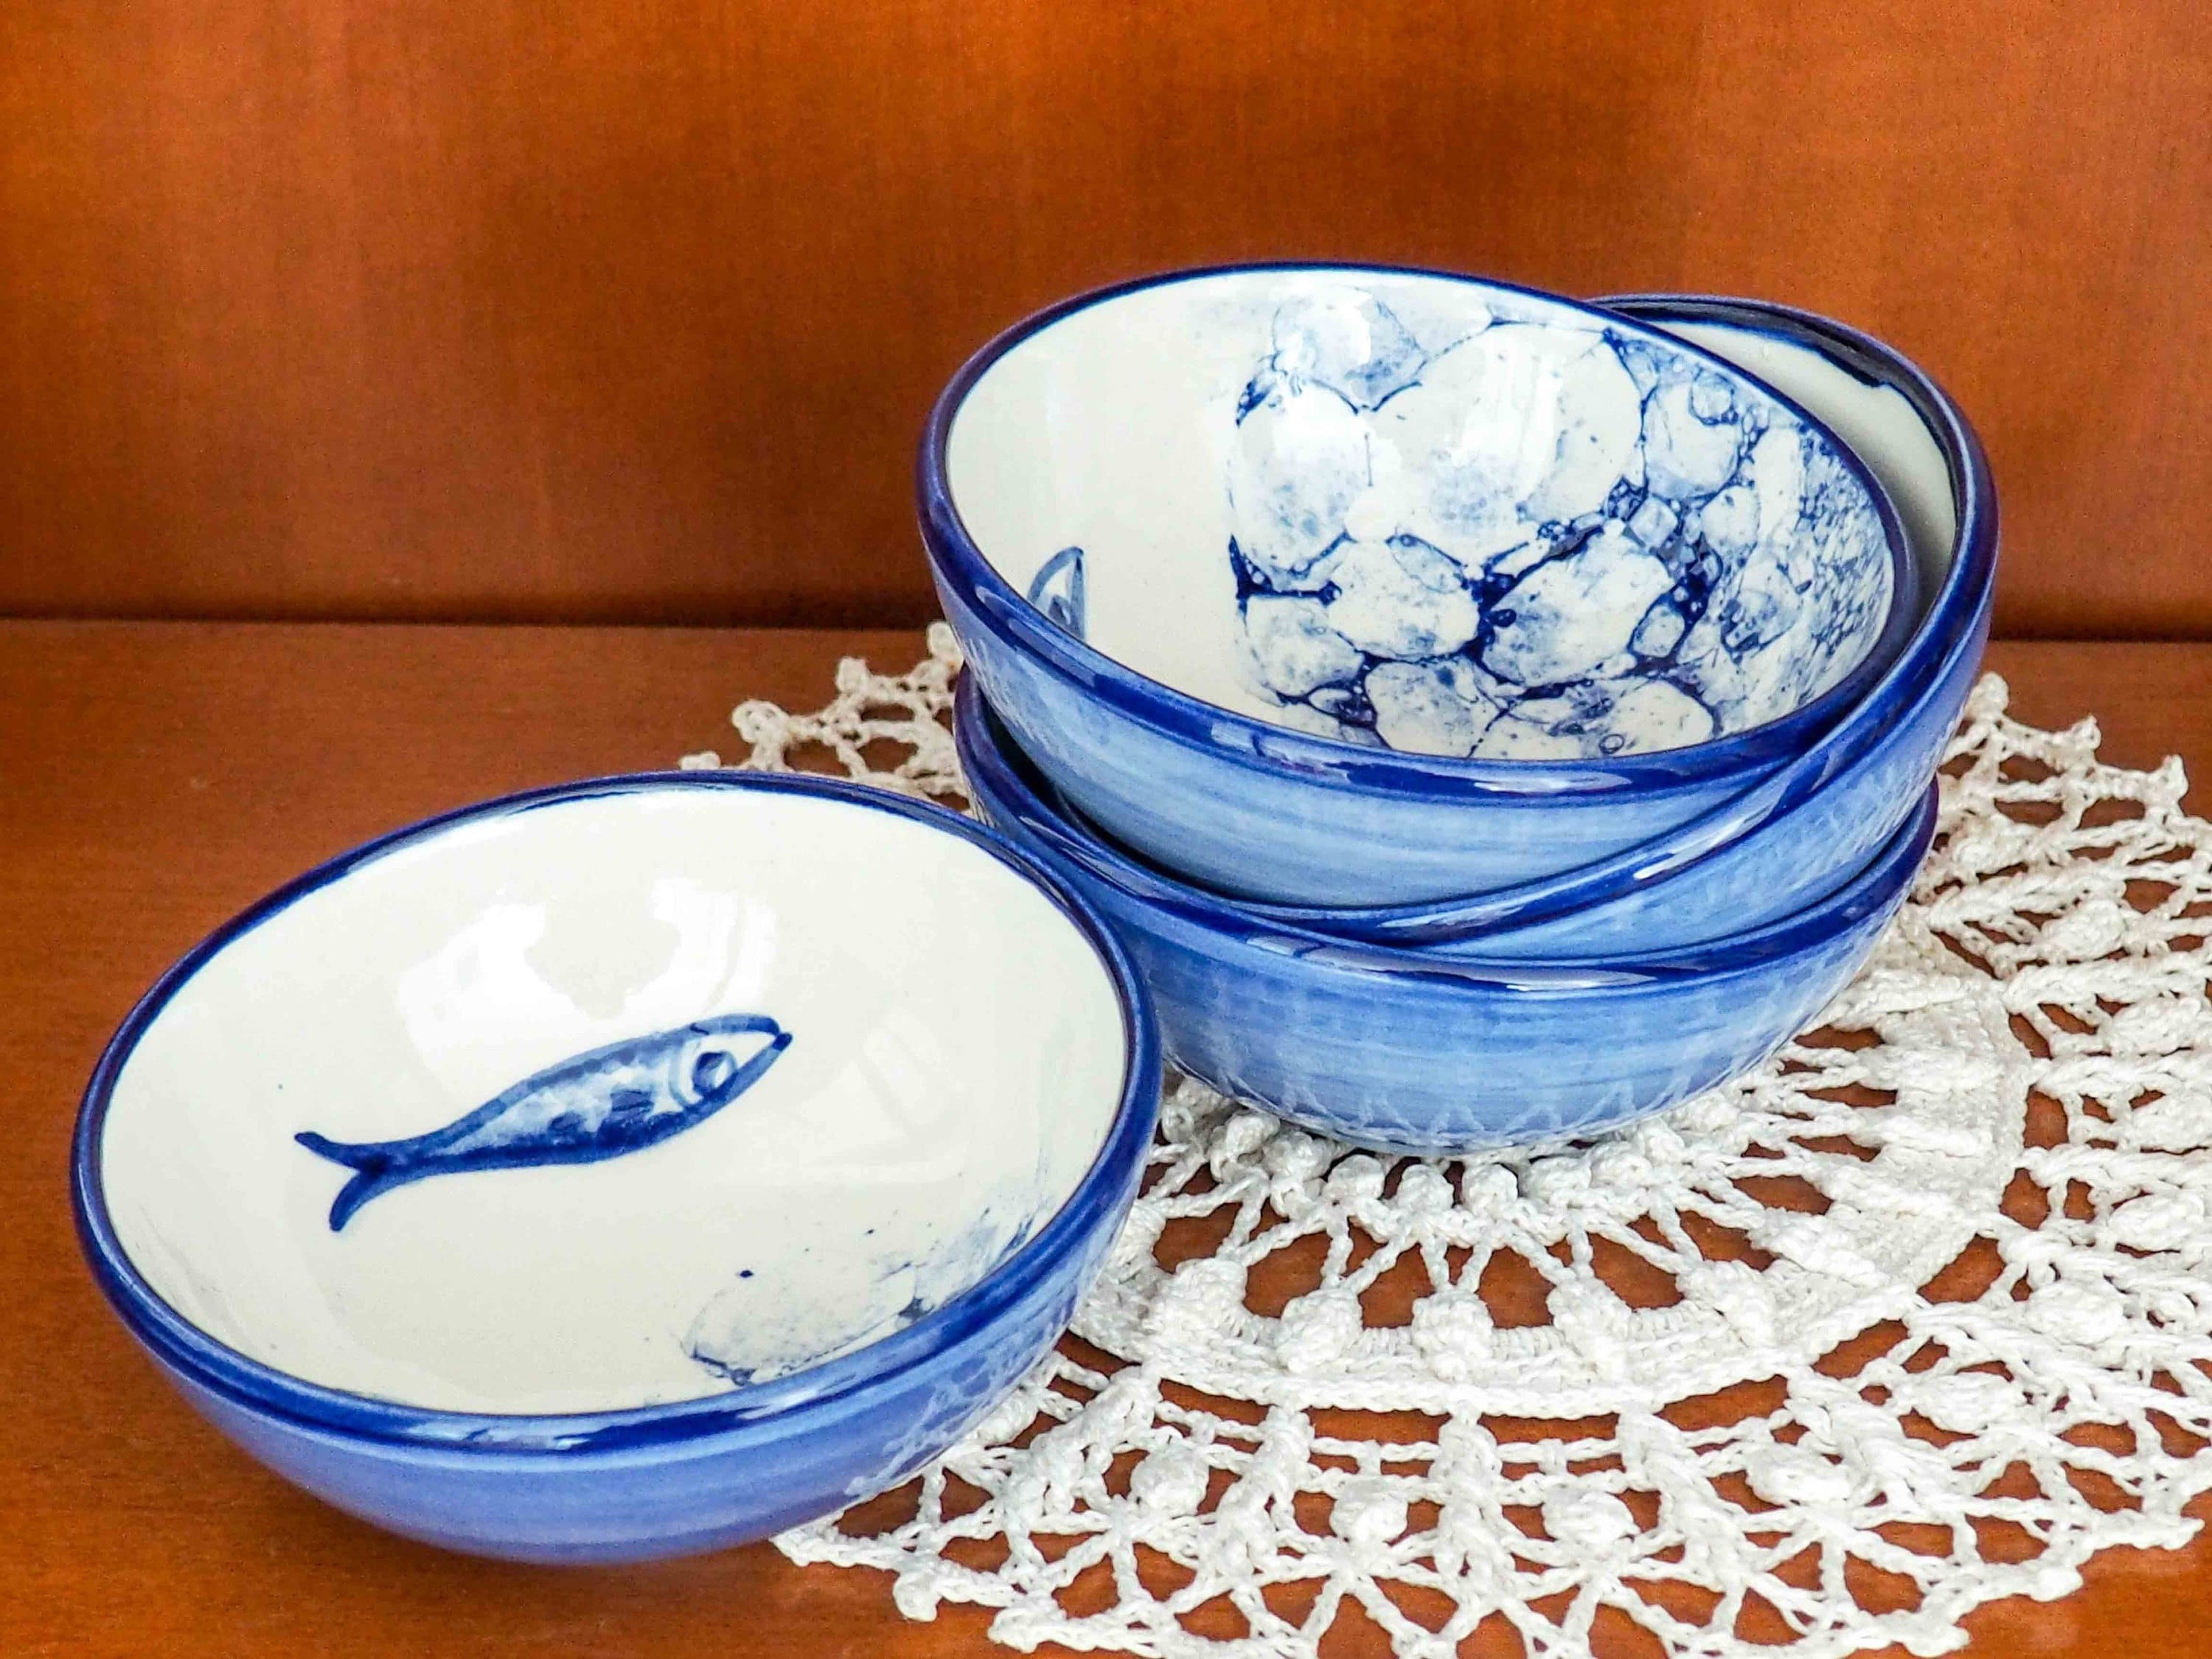 diseño tradicional Recipiente de porcelana 9 cm Wm Bartleet & Sons ideal para guardar la sal azul 